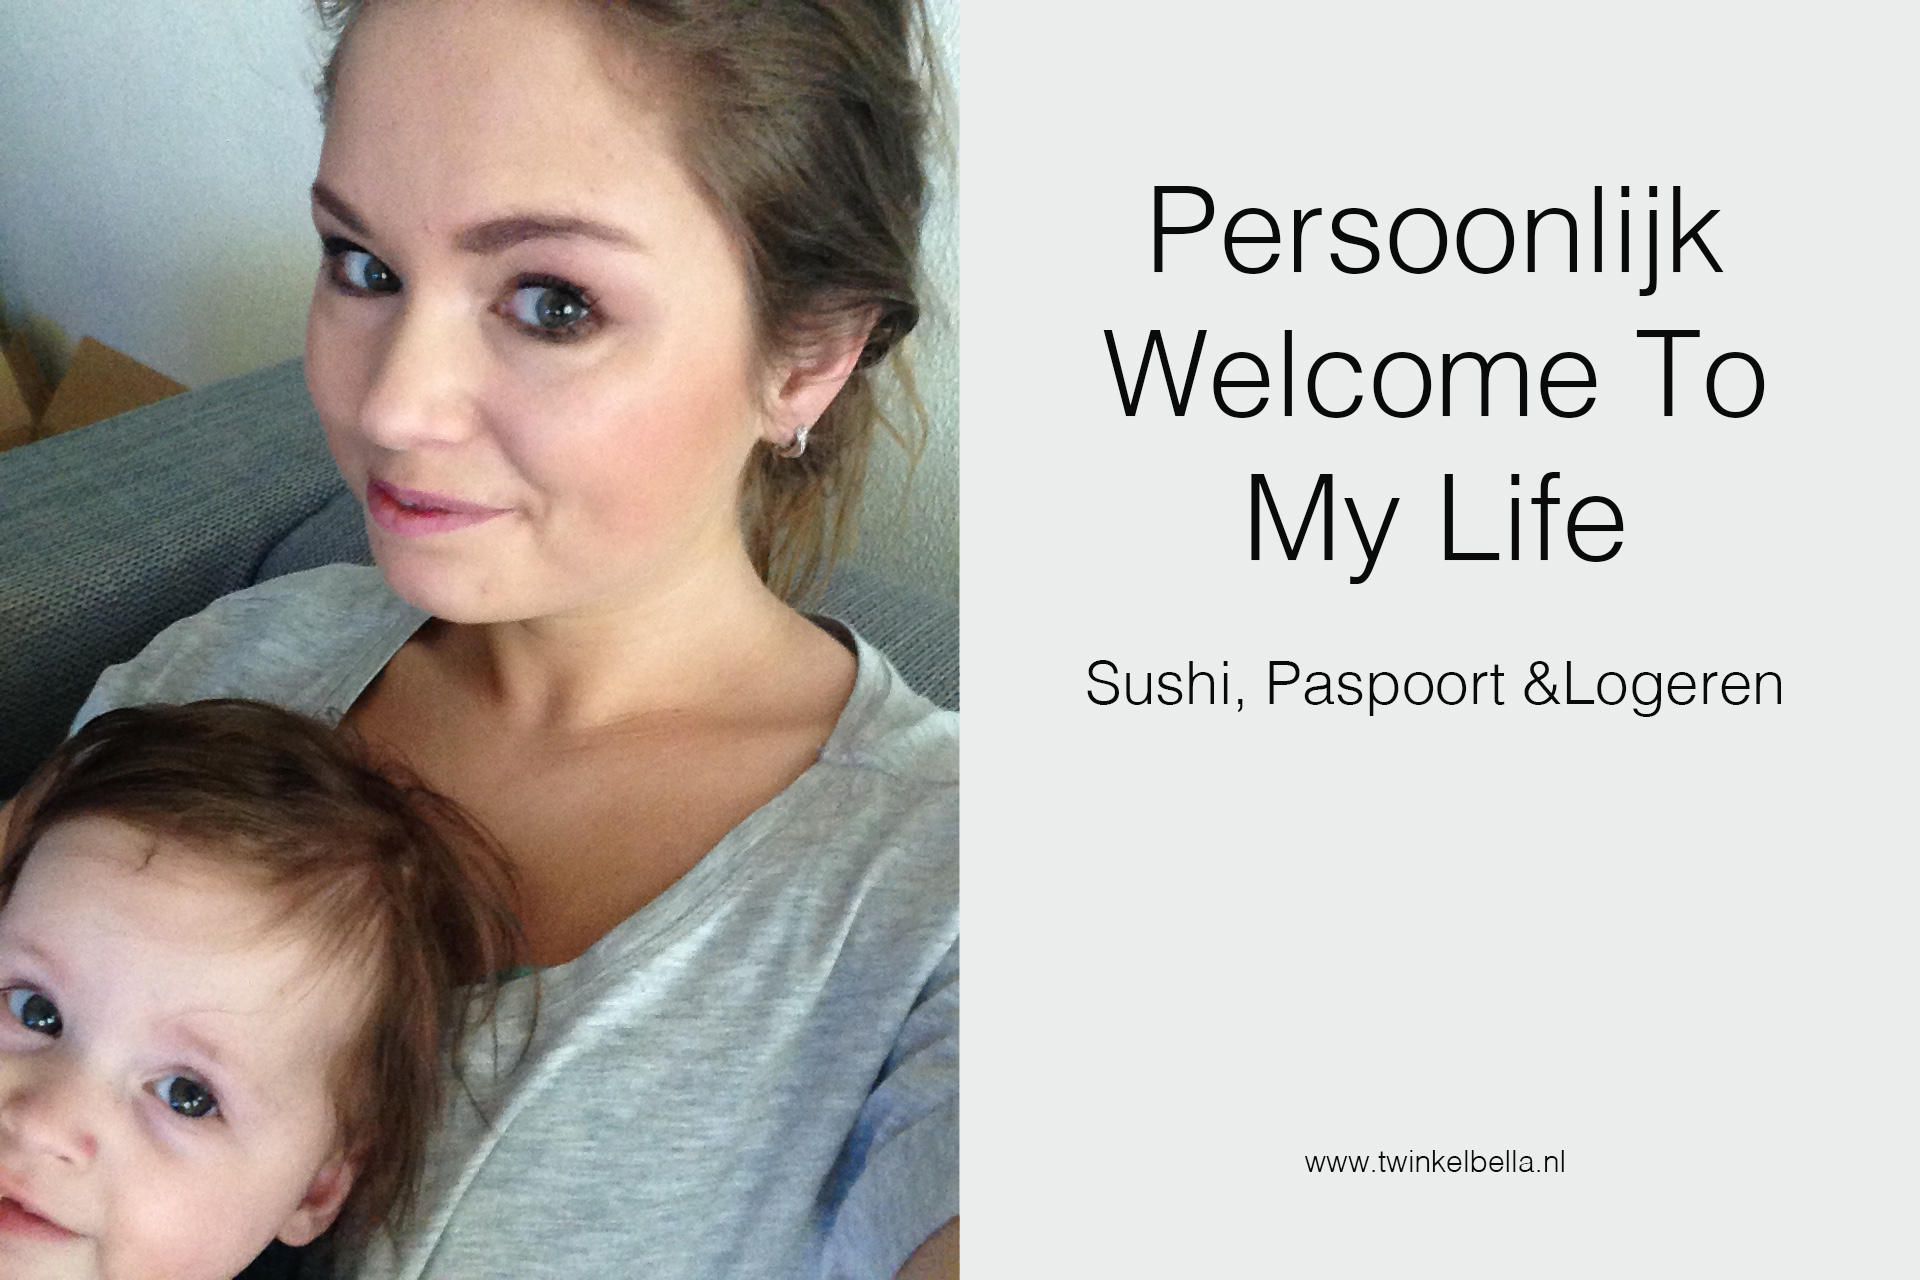 Persoonlijk: Welcome To My Life! Sushi, paspoort & logeren